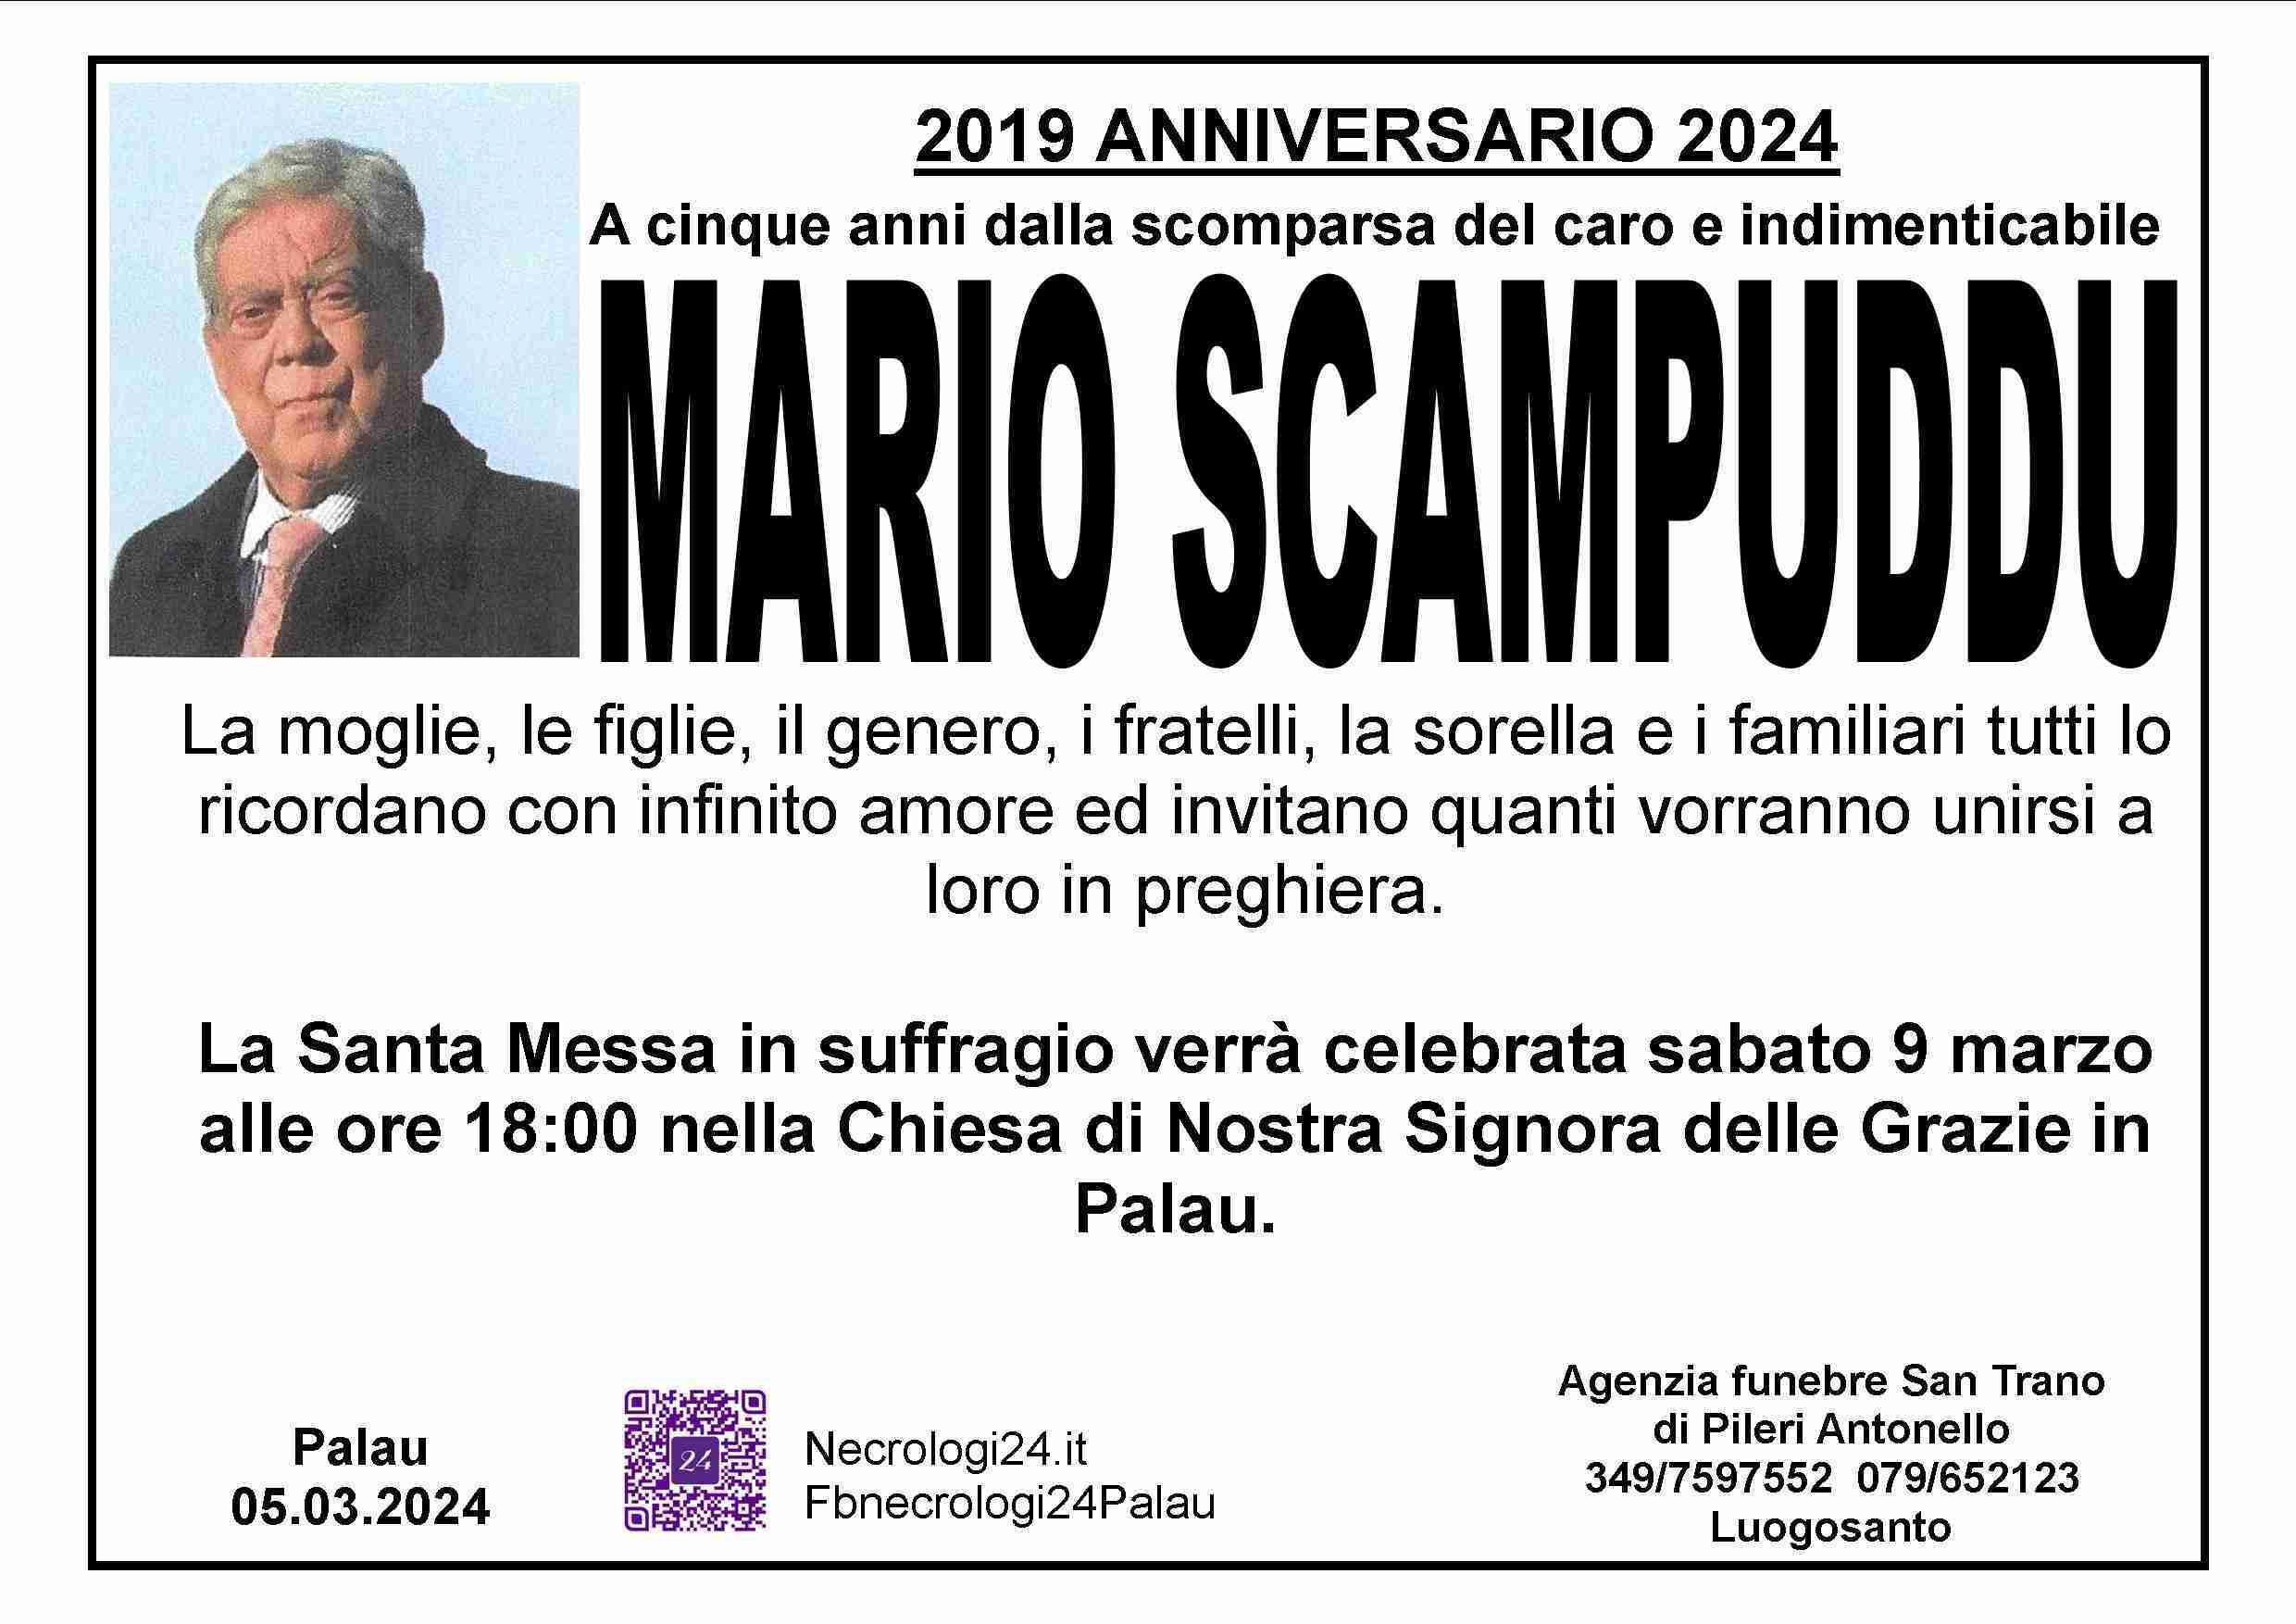 Mario Scampuddu